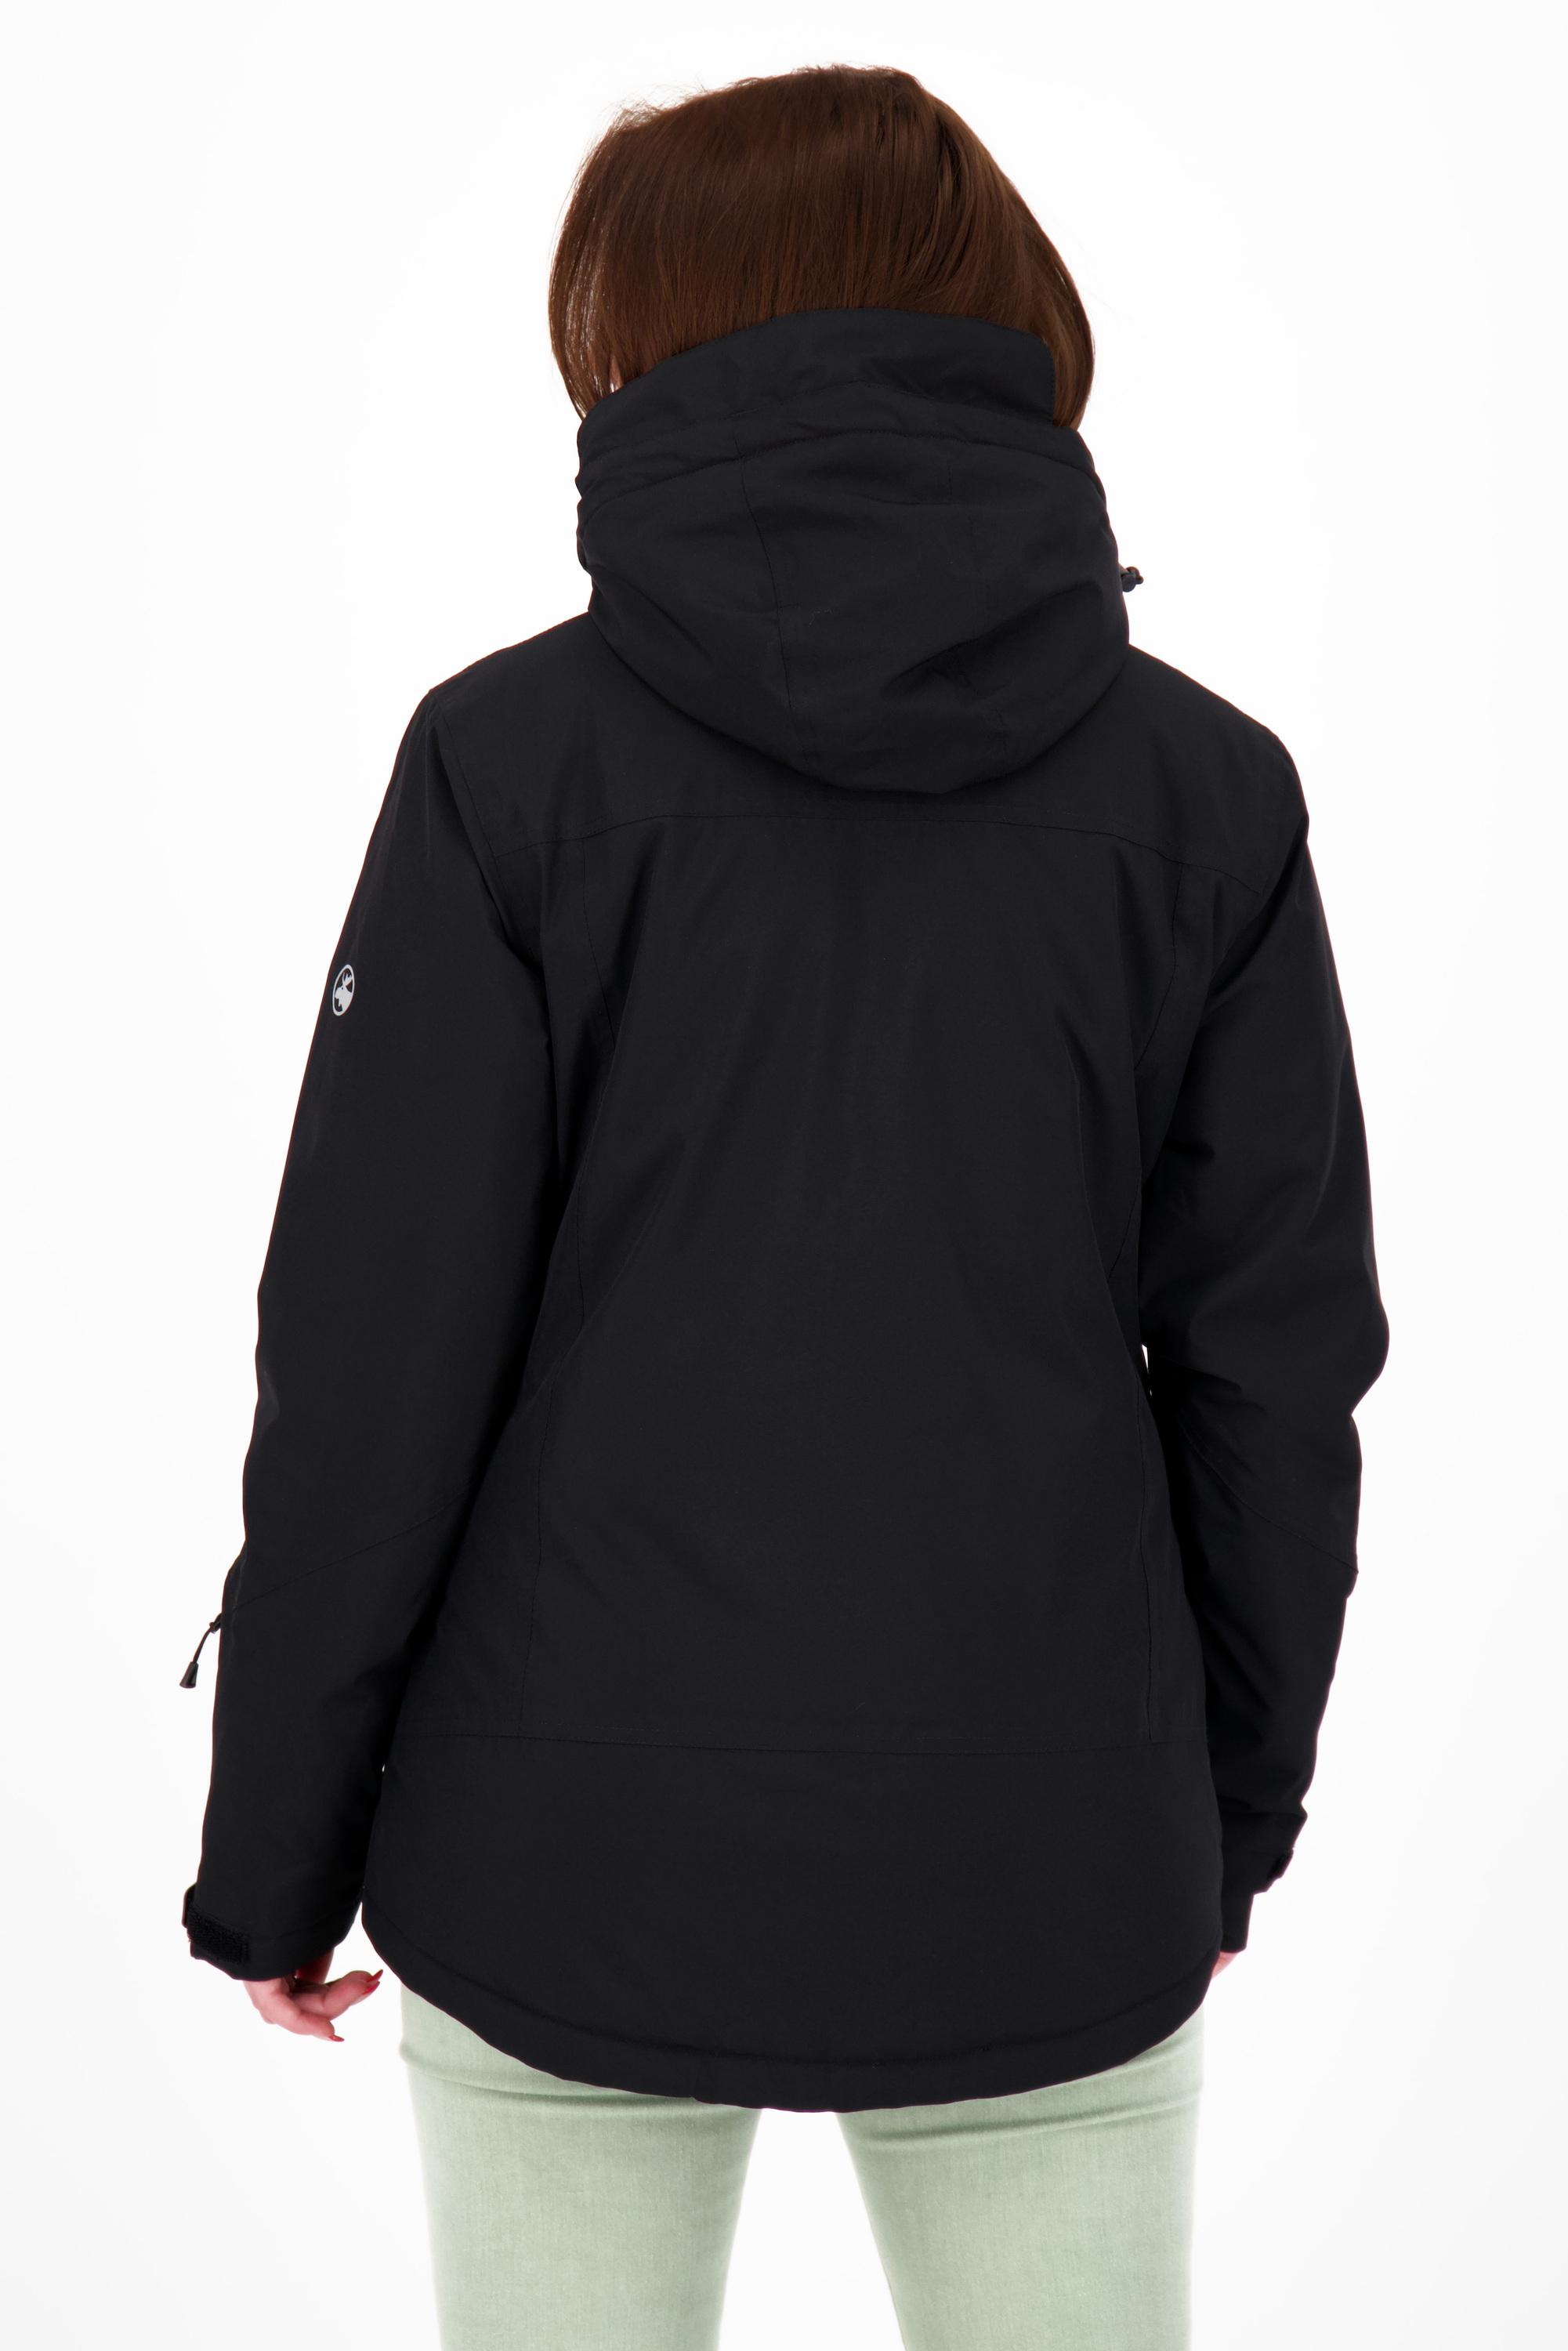 MONTREAL Winterjacke SportScheck Shop Online Damen black active WOMEN kaufen im von DEPROC